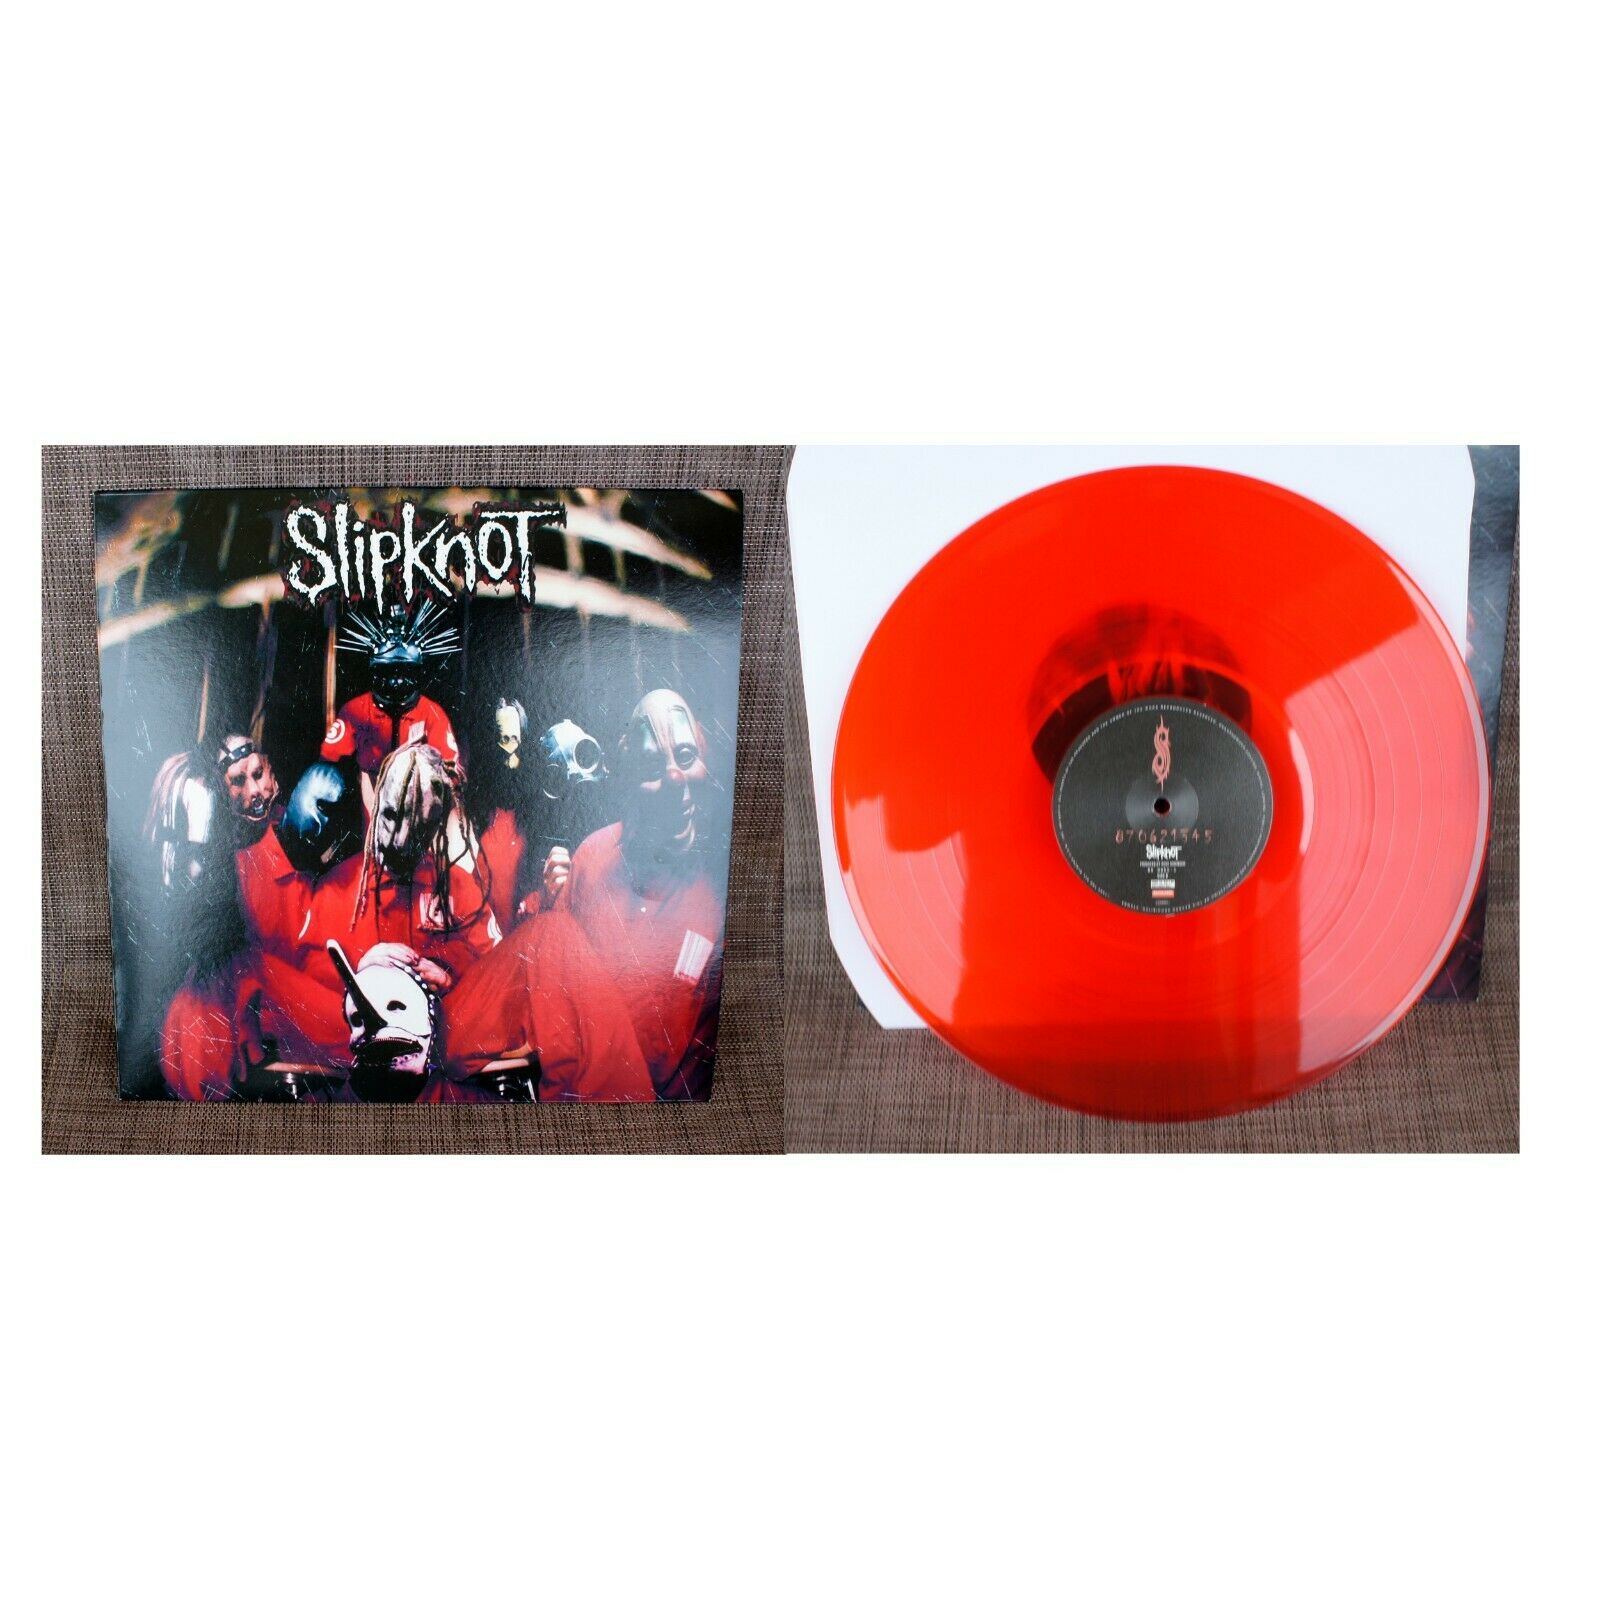 krølle asiatisk fotografering popsike.com - Slipknot ?– Slipknot, Red Vinyl, LP, 2020 Reissue, NEW, Korn  Marilyn Manson - auction details